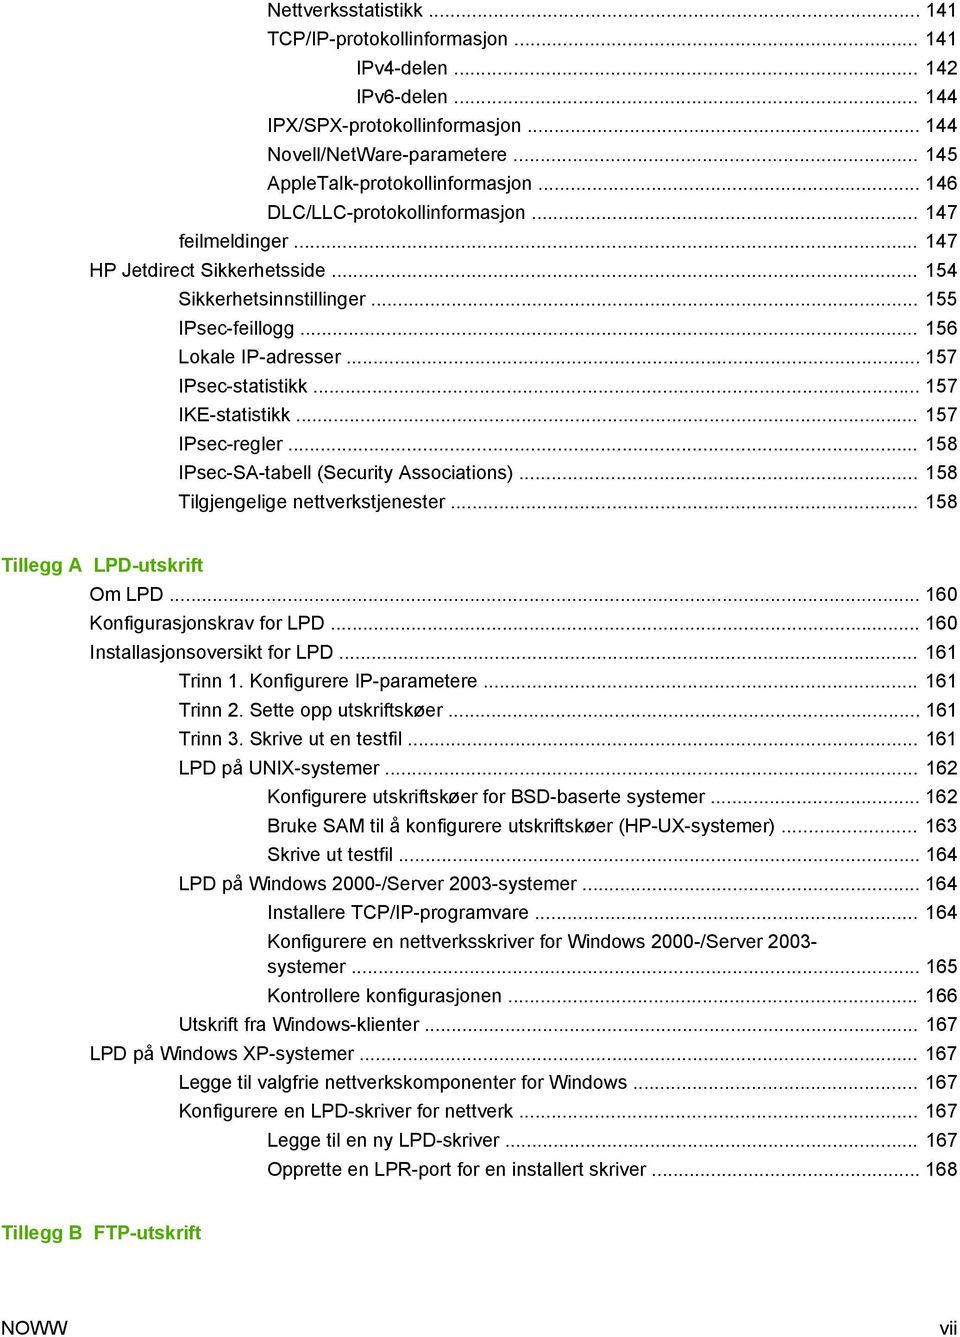 .. 157 IKE-statistikk... 157 IPsec-regler... 158 IPsec-SA-tabell (Security Associations)... 158 Tilgjengelige nettverkstjenester... 158 Tillegg A LPD-utskrift Om LPD... 160 Konfigurasjonskrav for LPD.